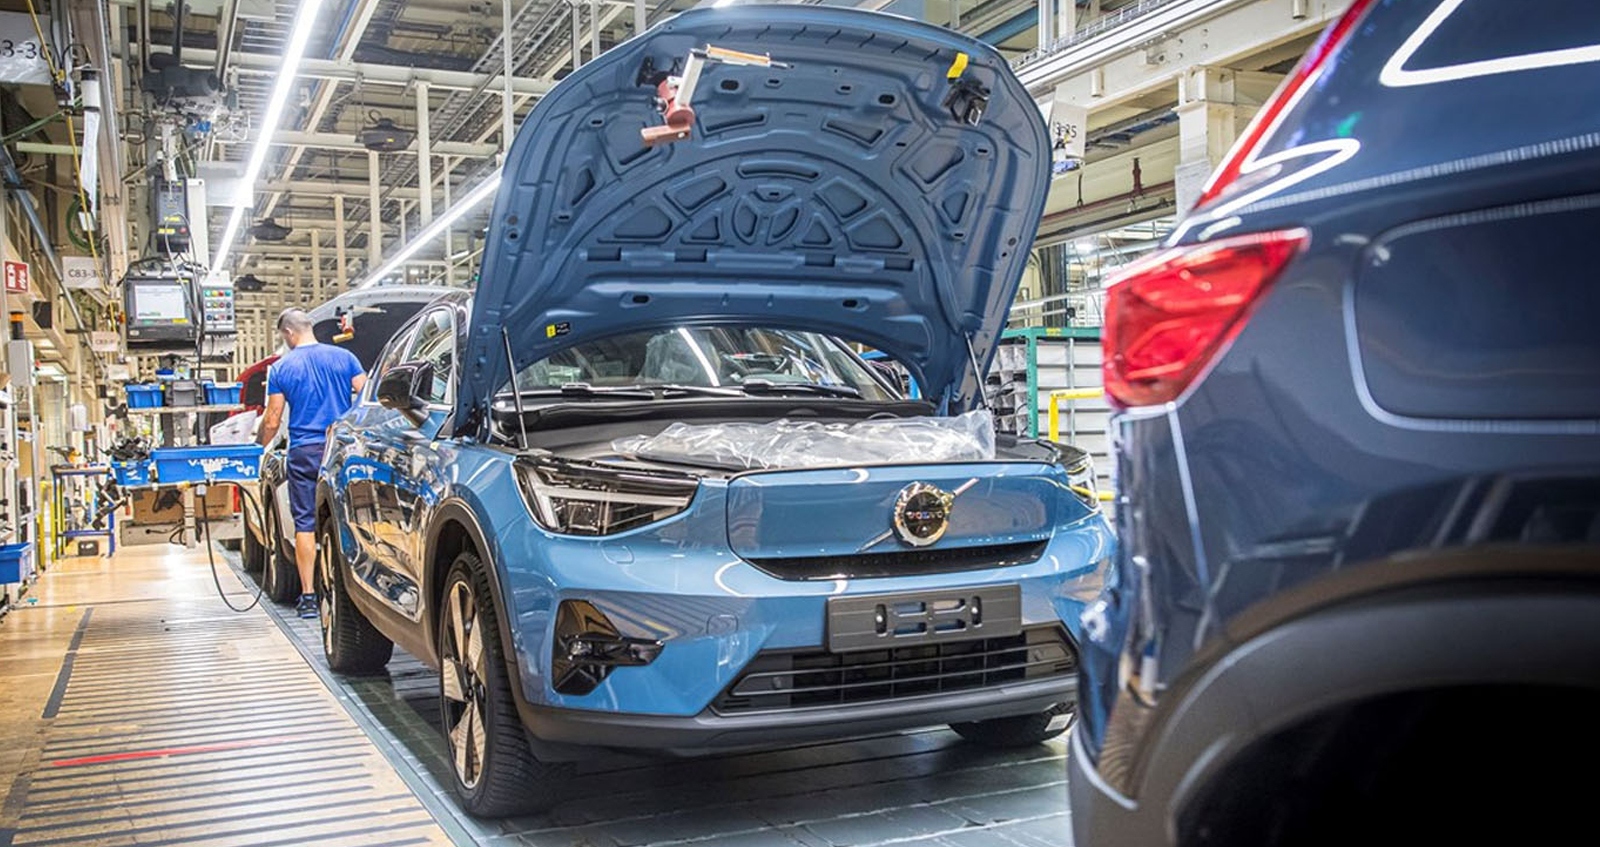 VOLVO ระบุ การผลิตรถยนต์ไฟฟ้าสร้างมลพิษมากกว่า รถยนต์ใช้น้ำมัน 70%